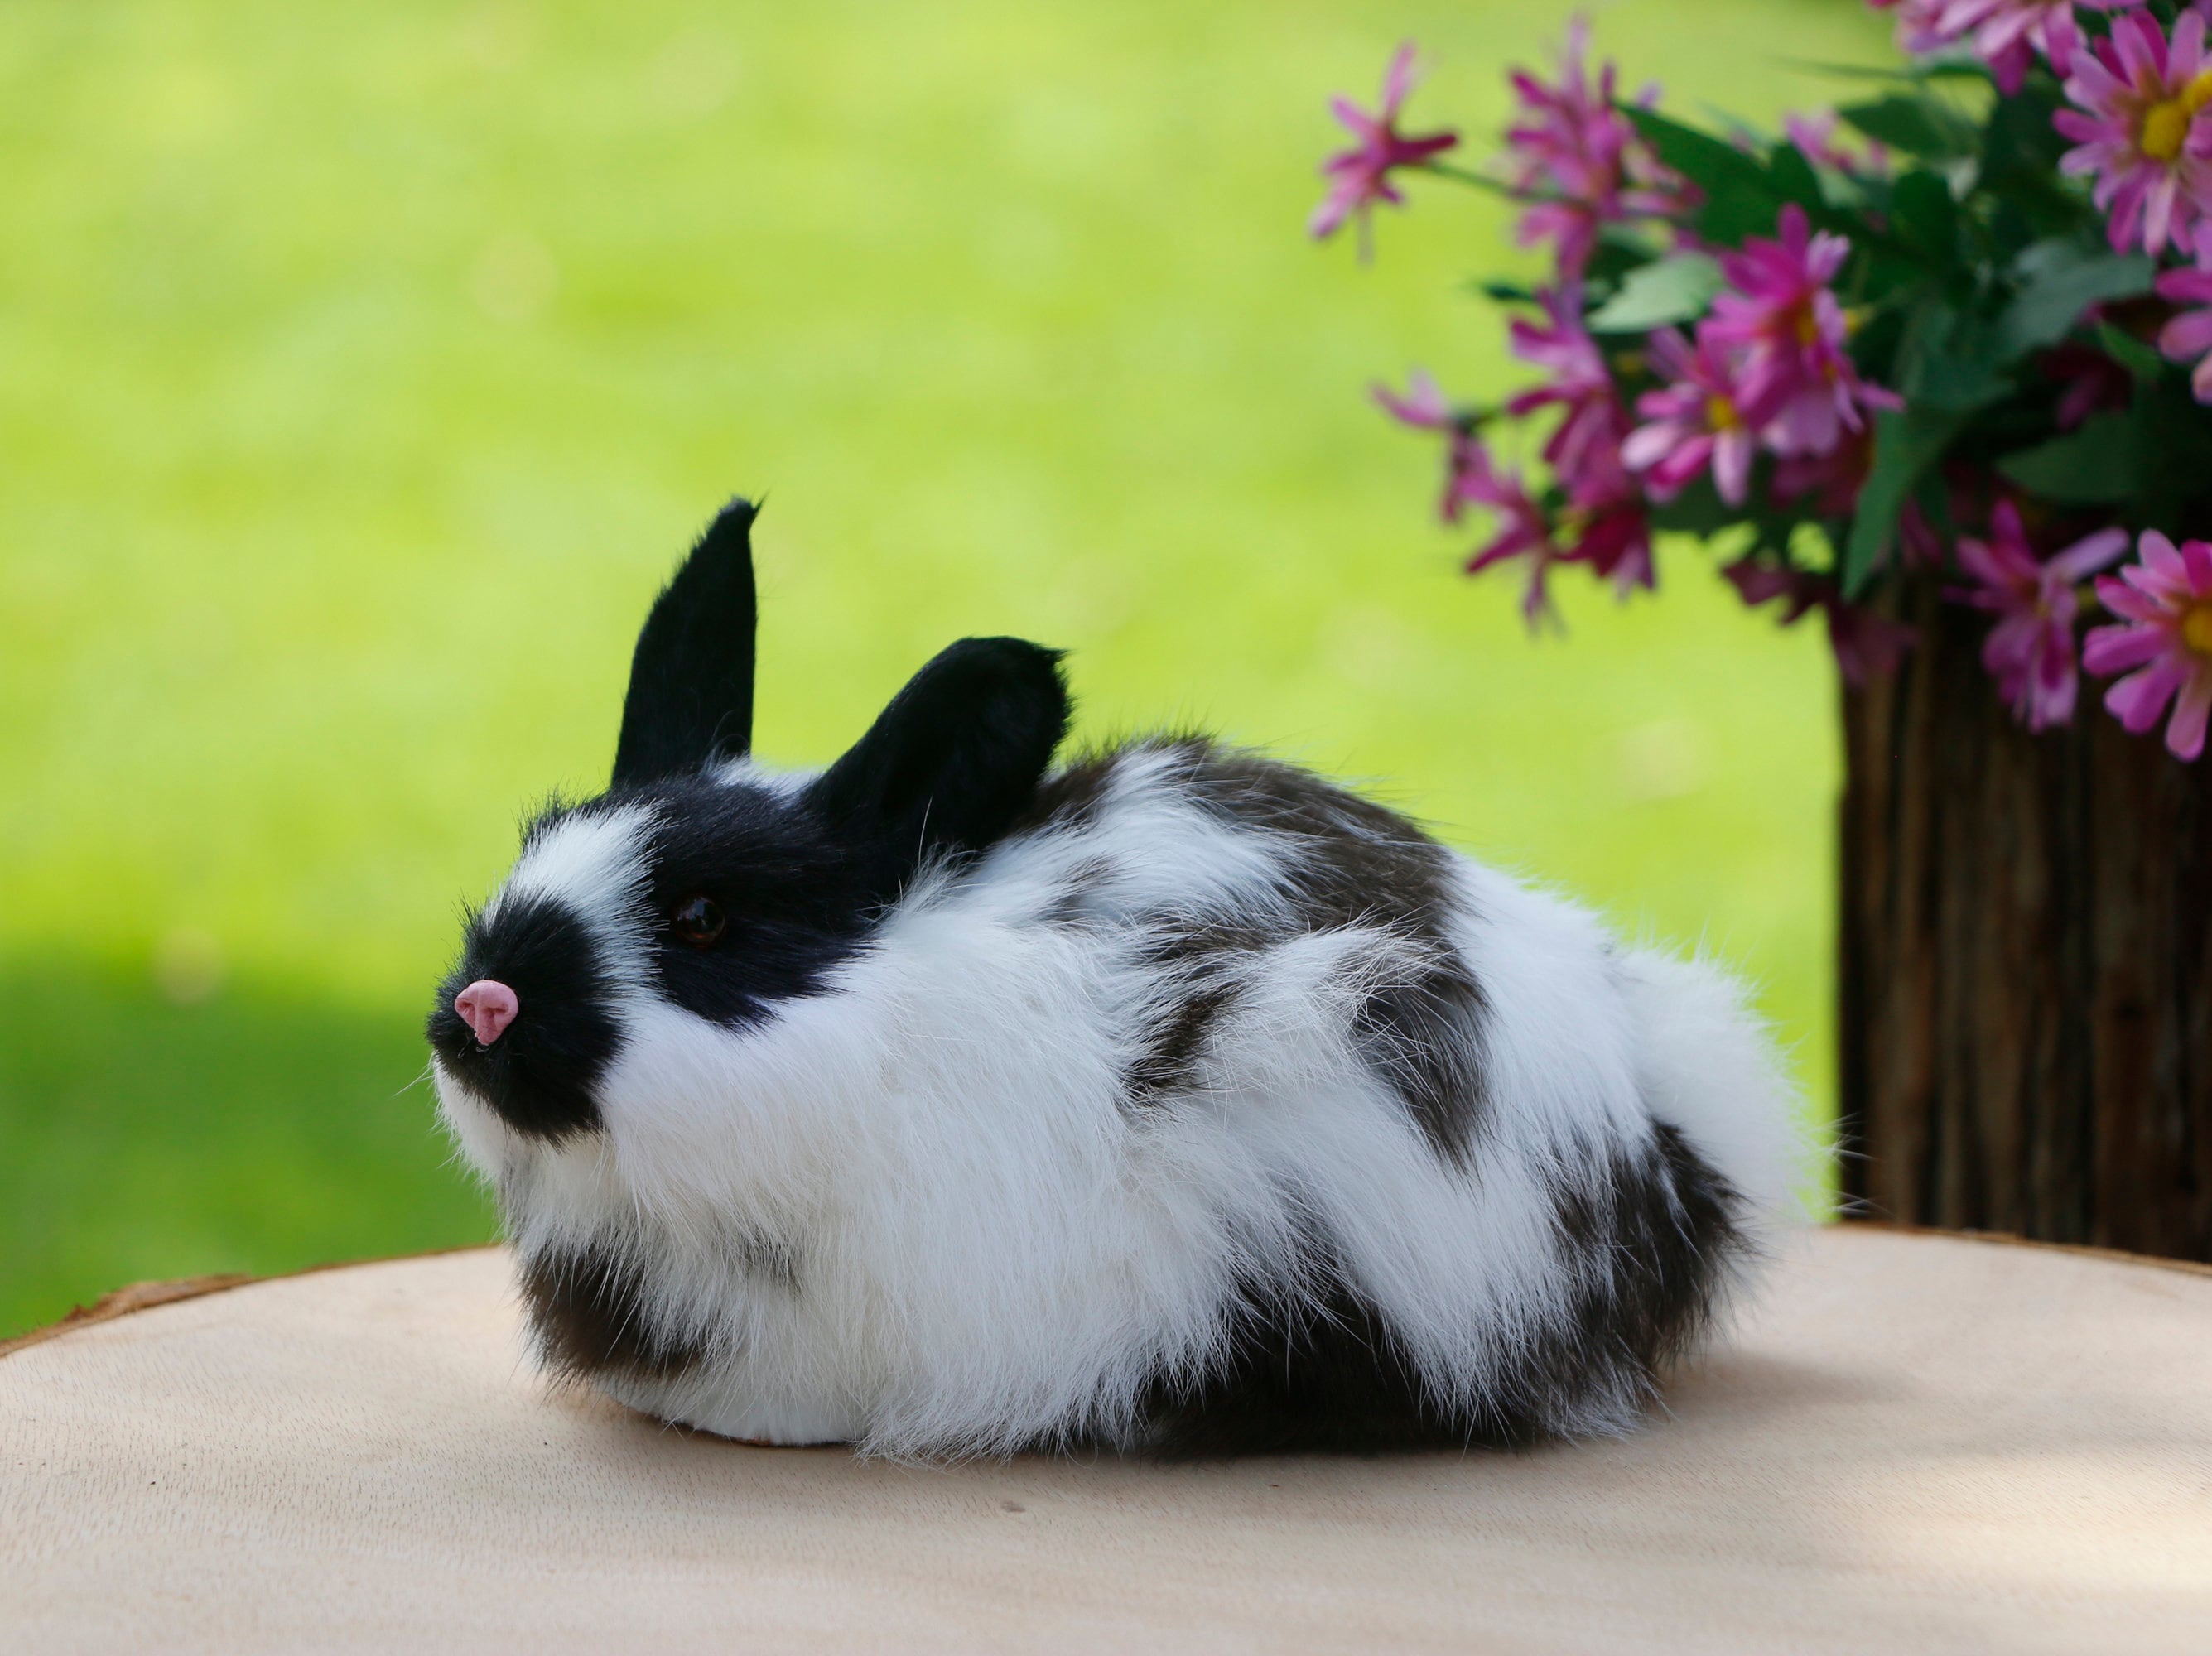 Décoration de lapin de Pâques lapin fille en peluche 12cm  5pcs-24421149